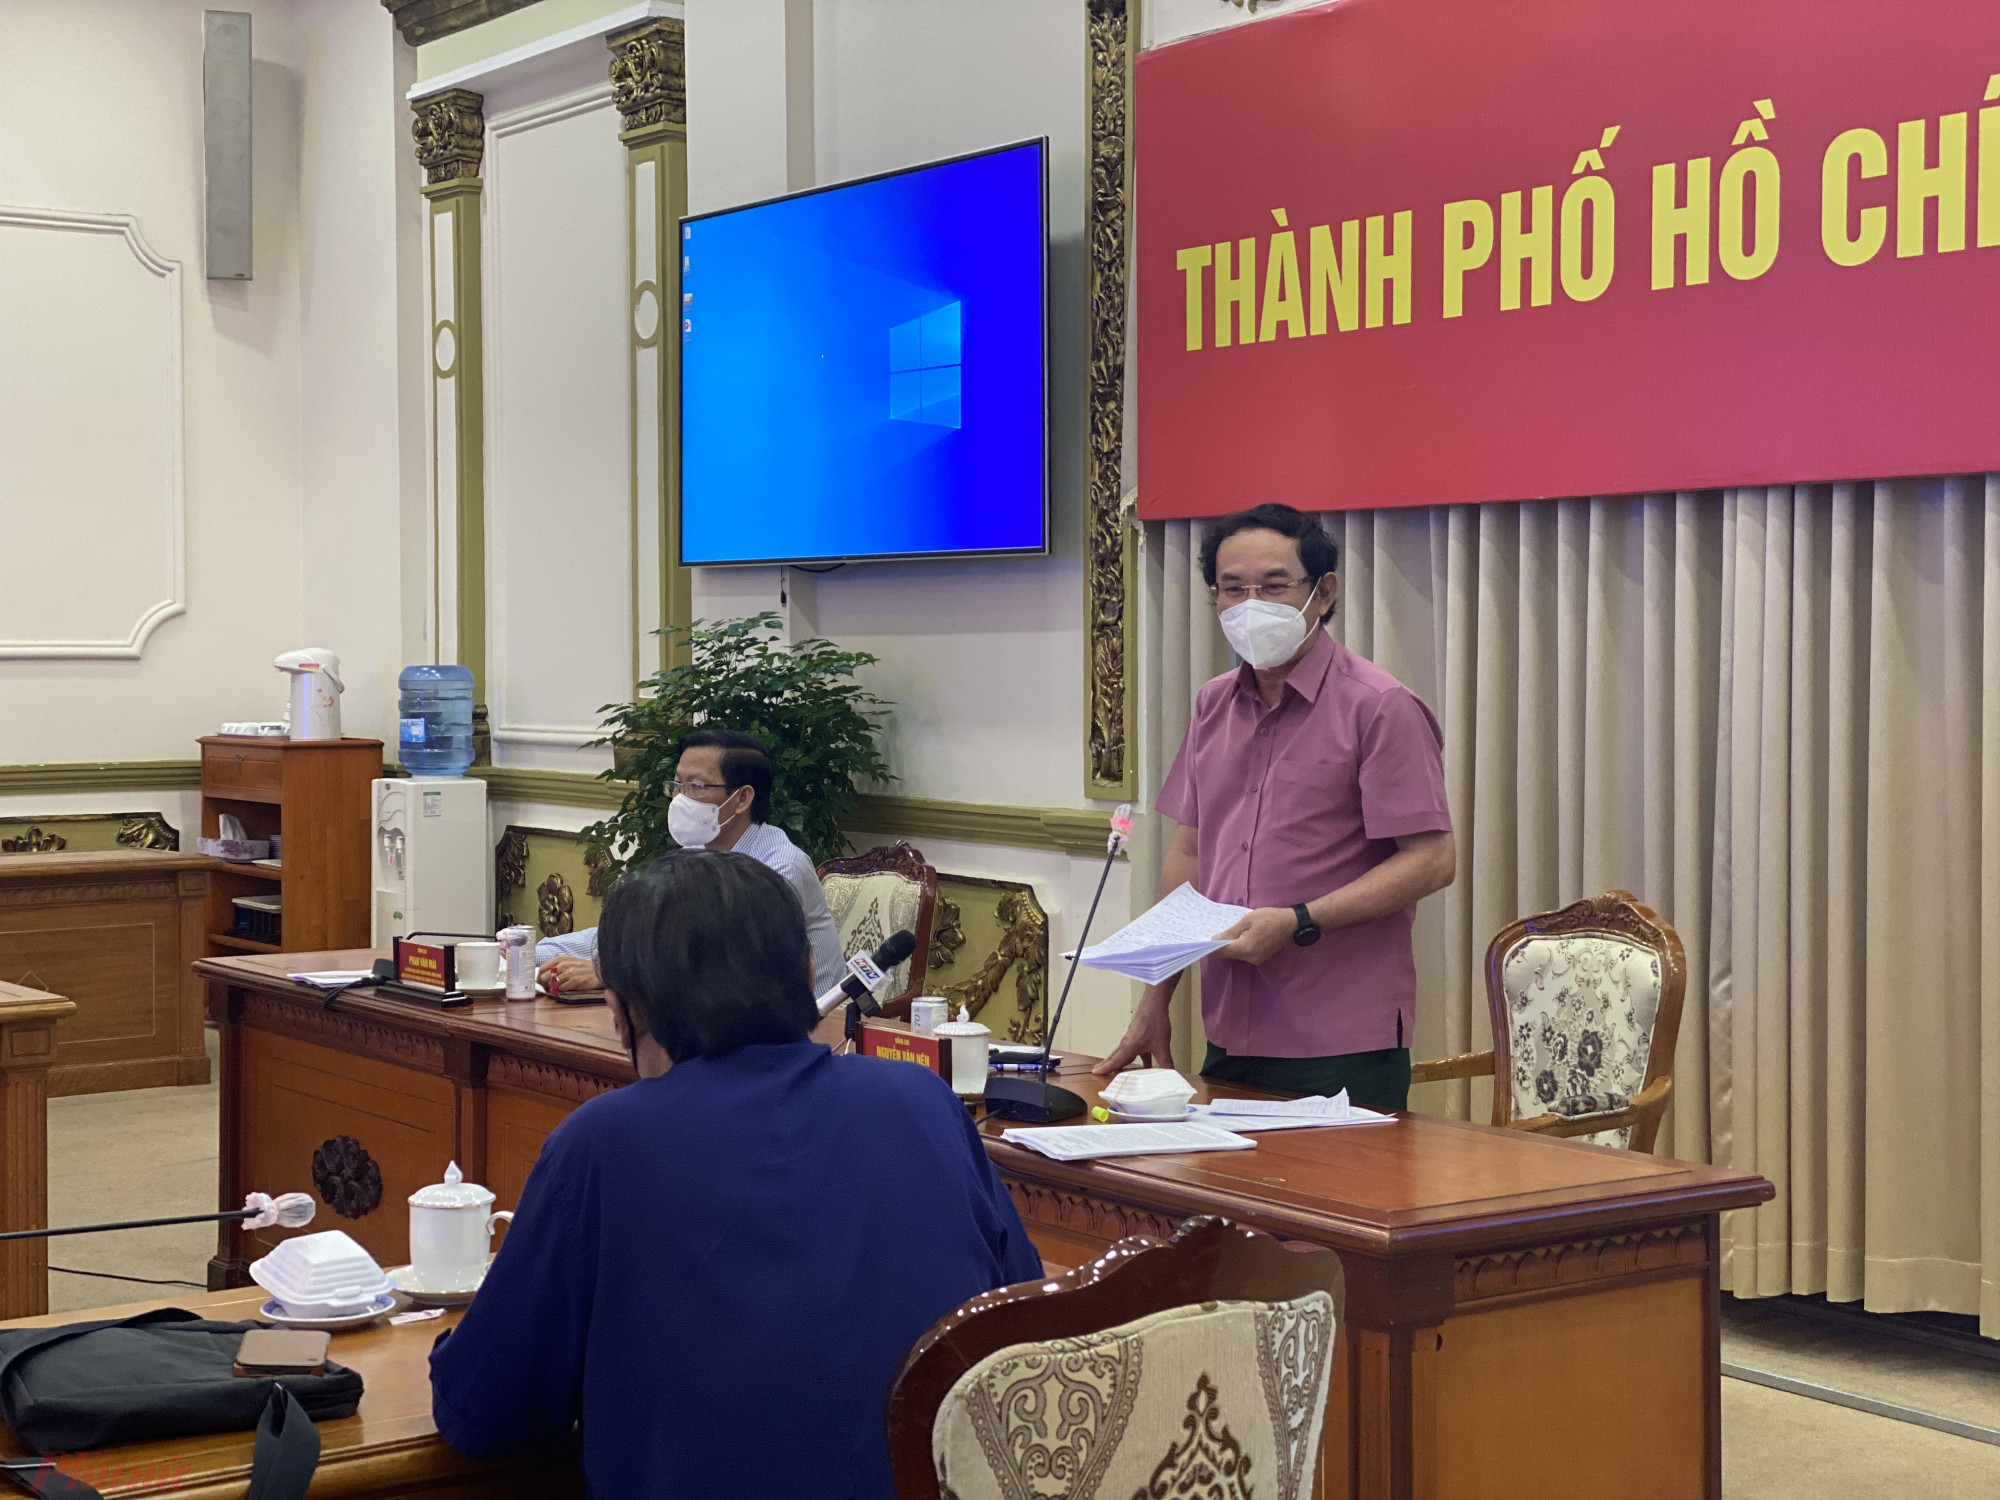 Bí thư Nguyễn Văn Nên phát biểu tại buổi gặp gỡ với chuyên gia, nhà khoa học trong sáng nay 